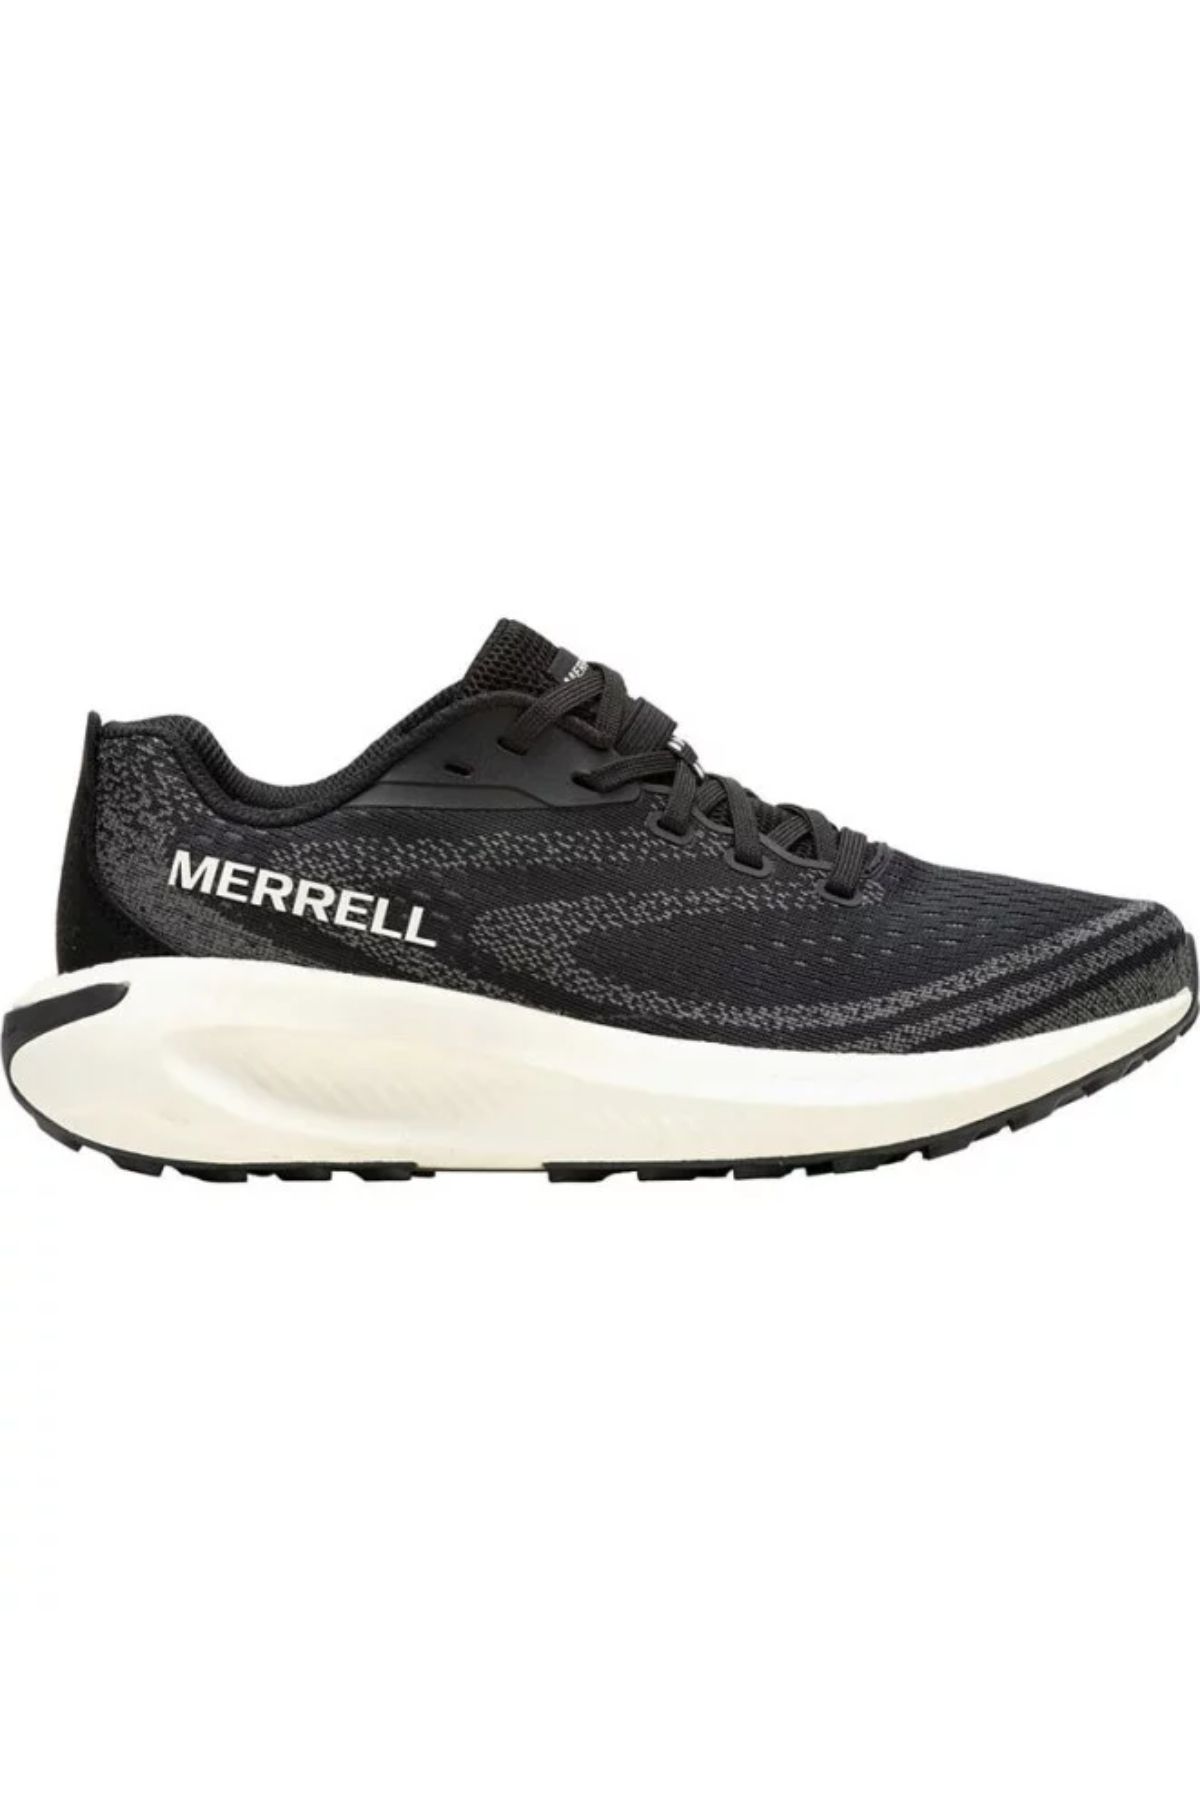 Merrell Morphlite Kadın Spor Ayakkabısı J068132